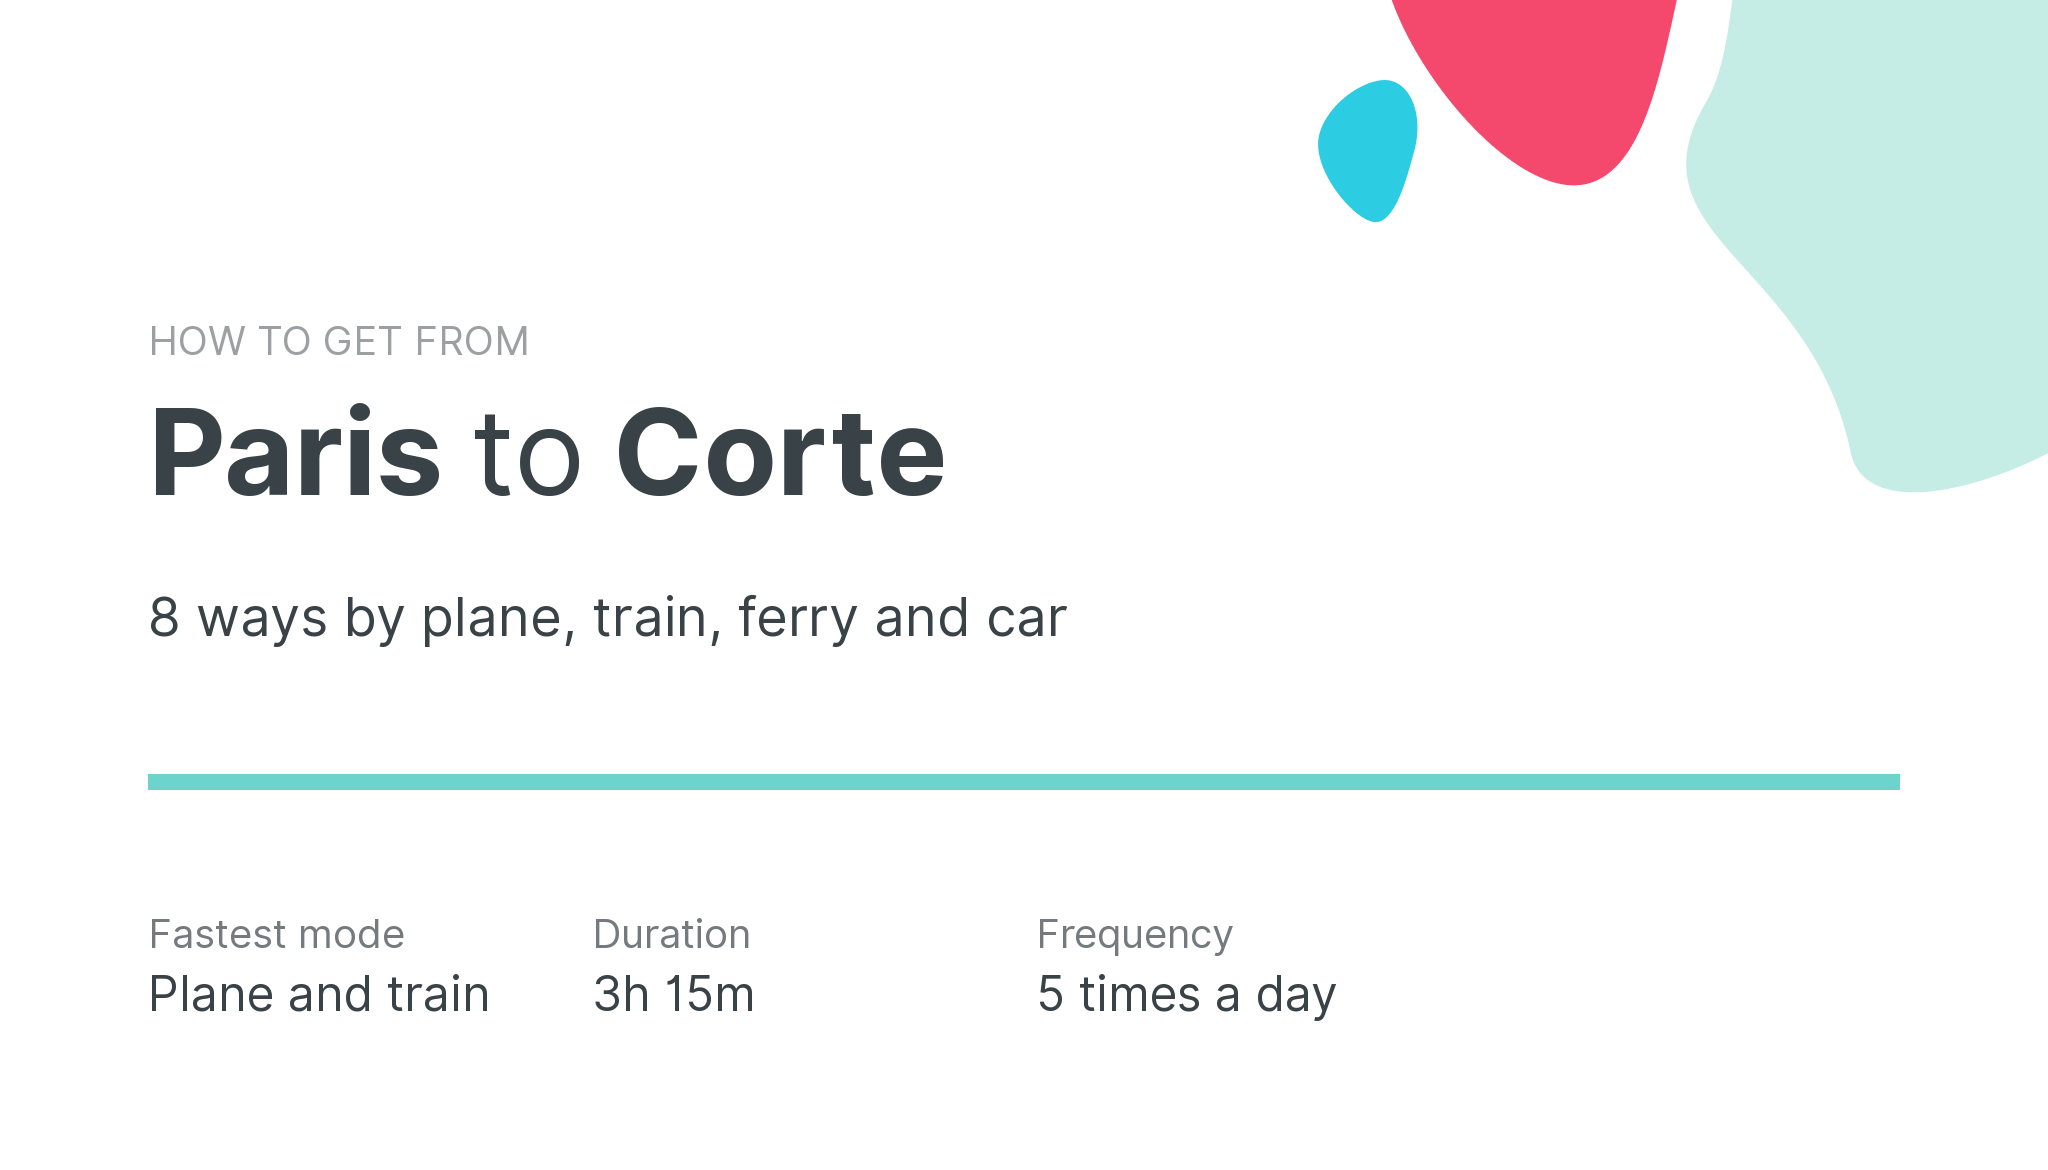 How do I get from Paris to Corte